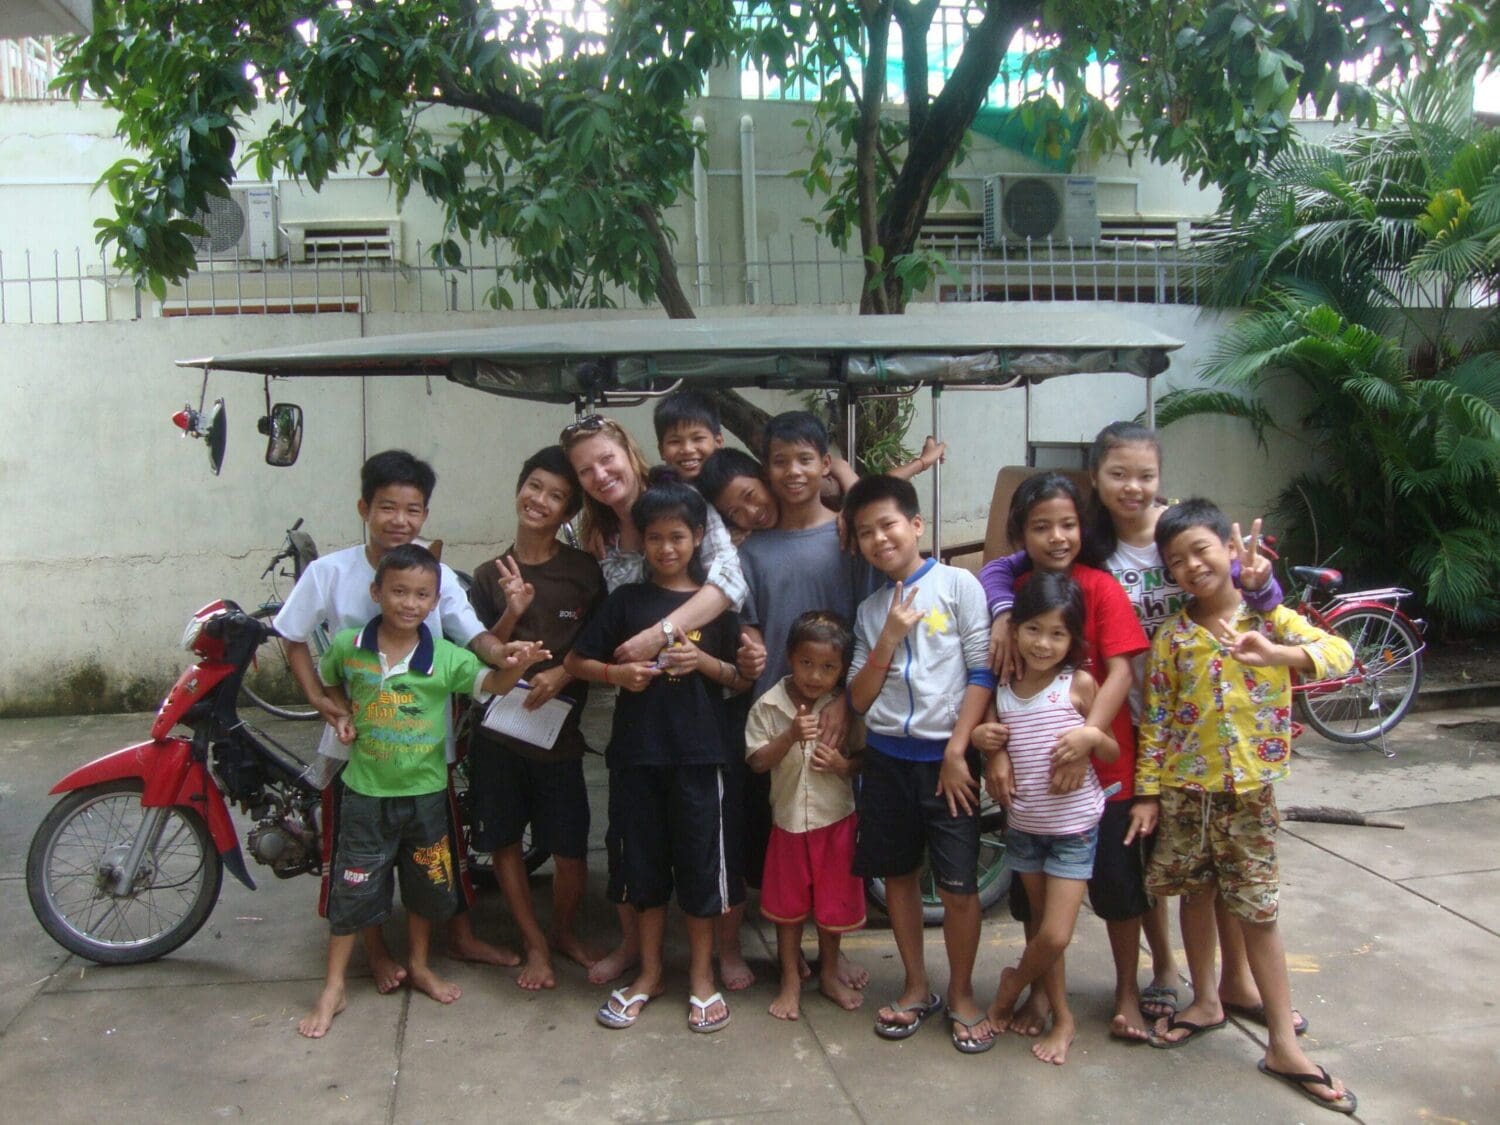 Teaching English in Cambodia